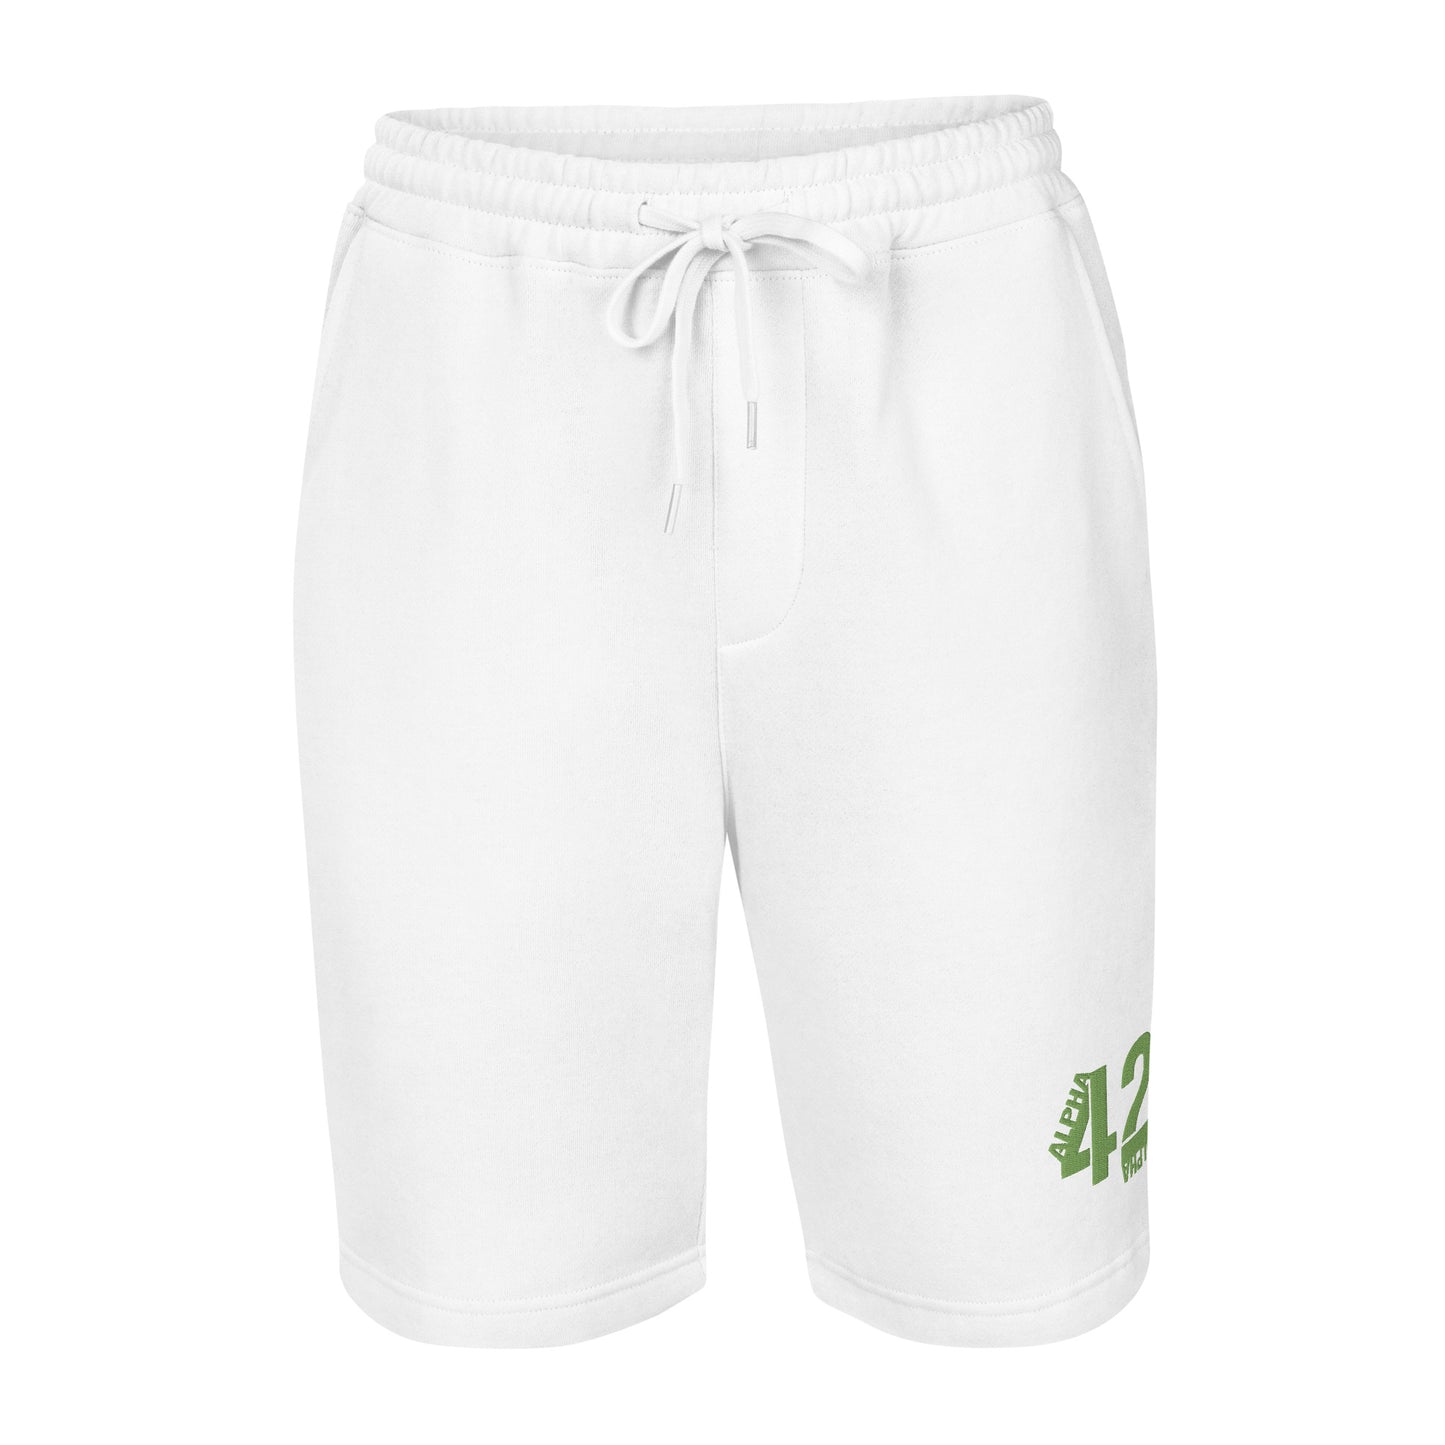 A42A - Men's fleece shorts